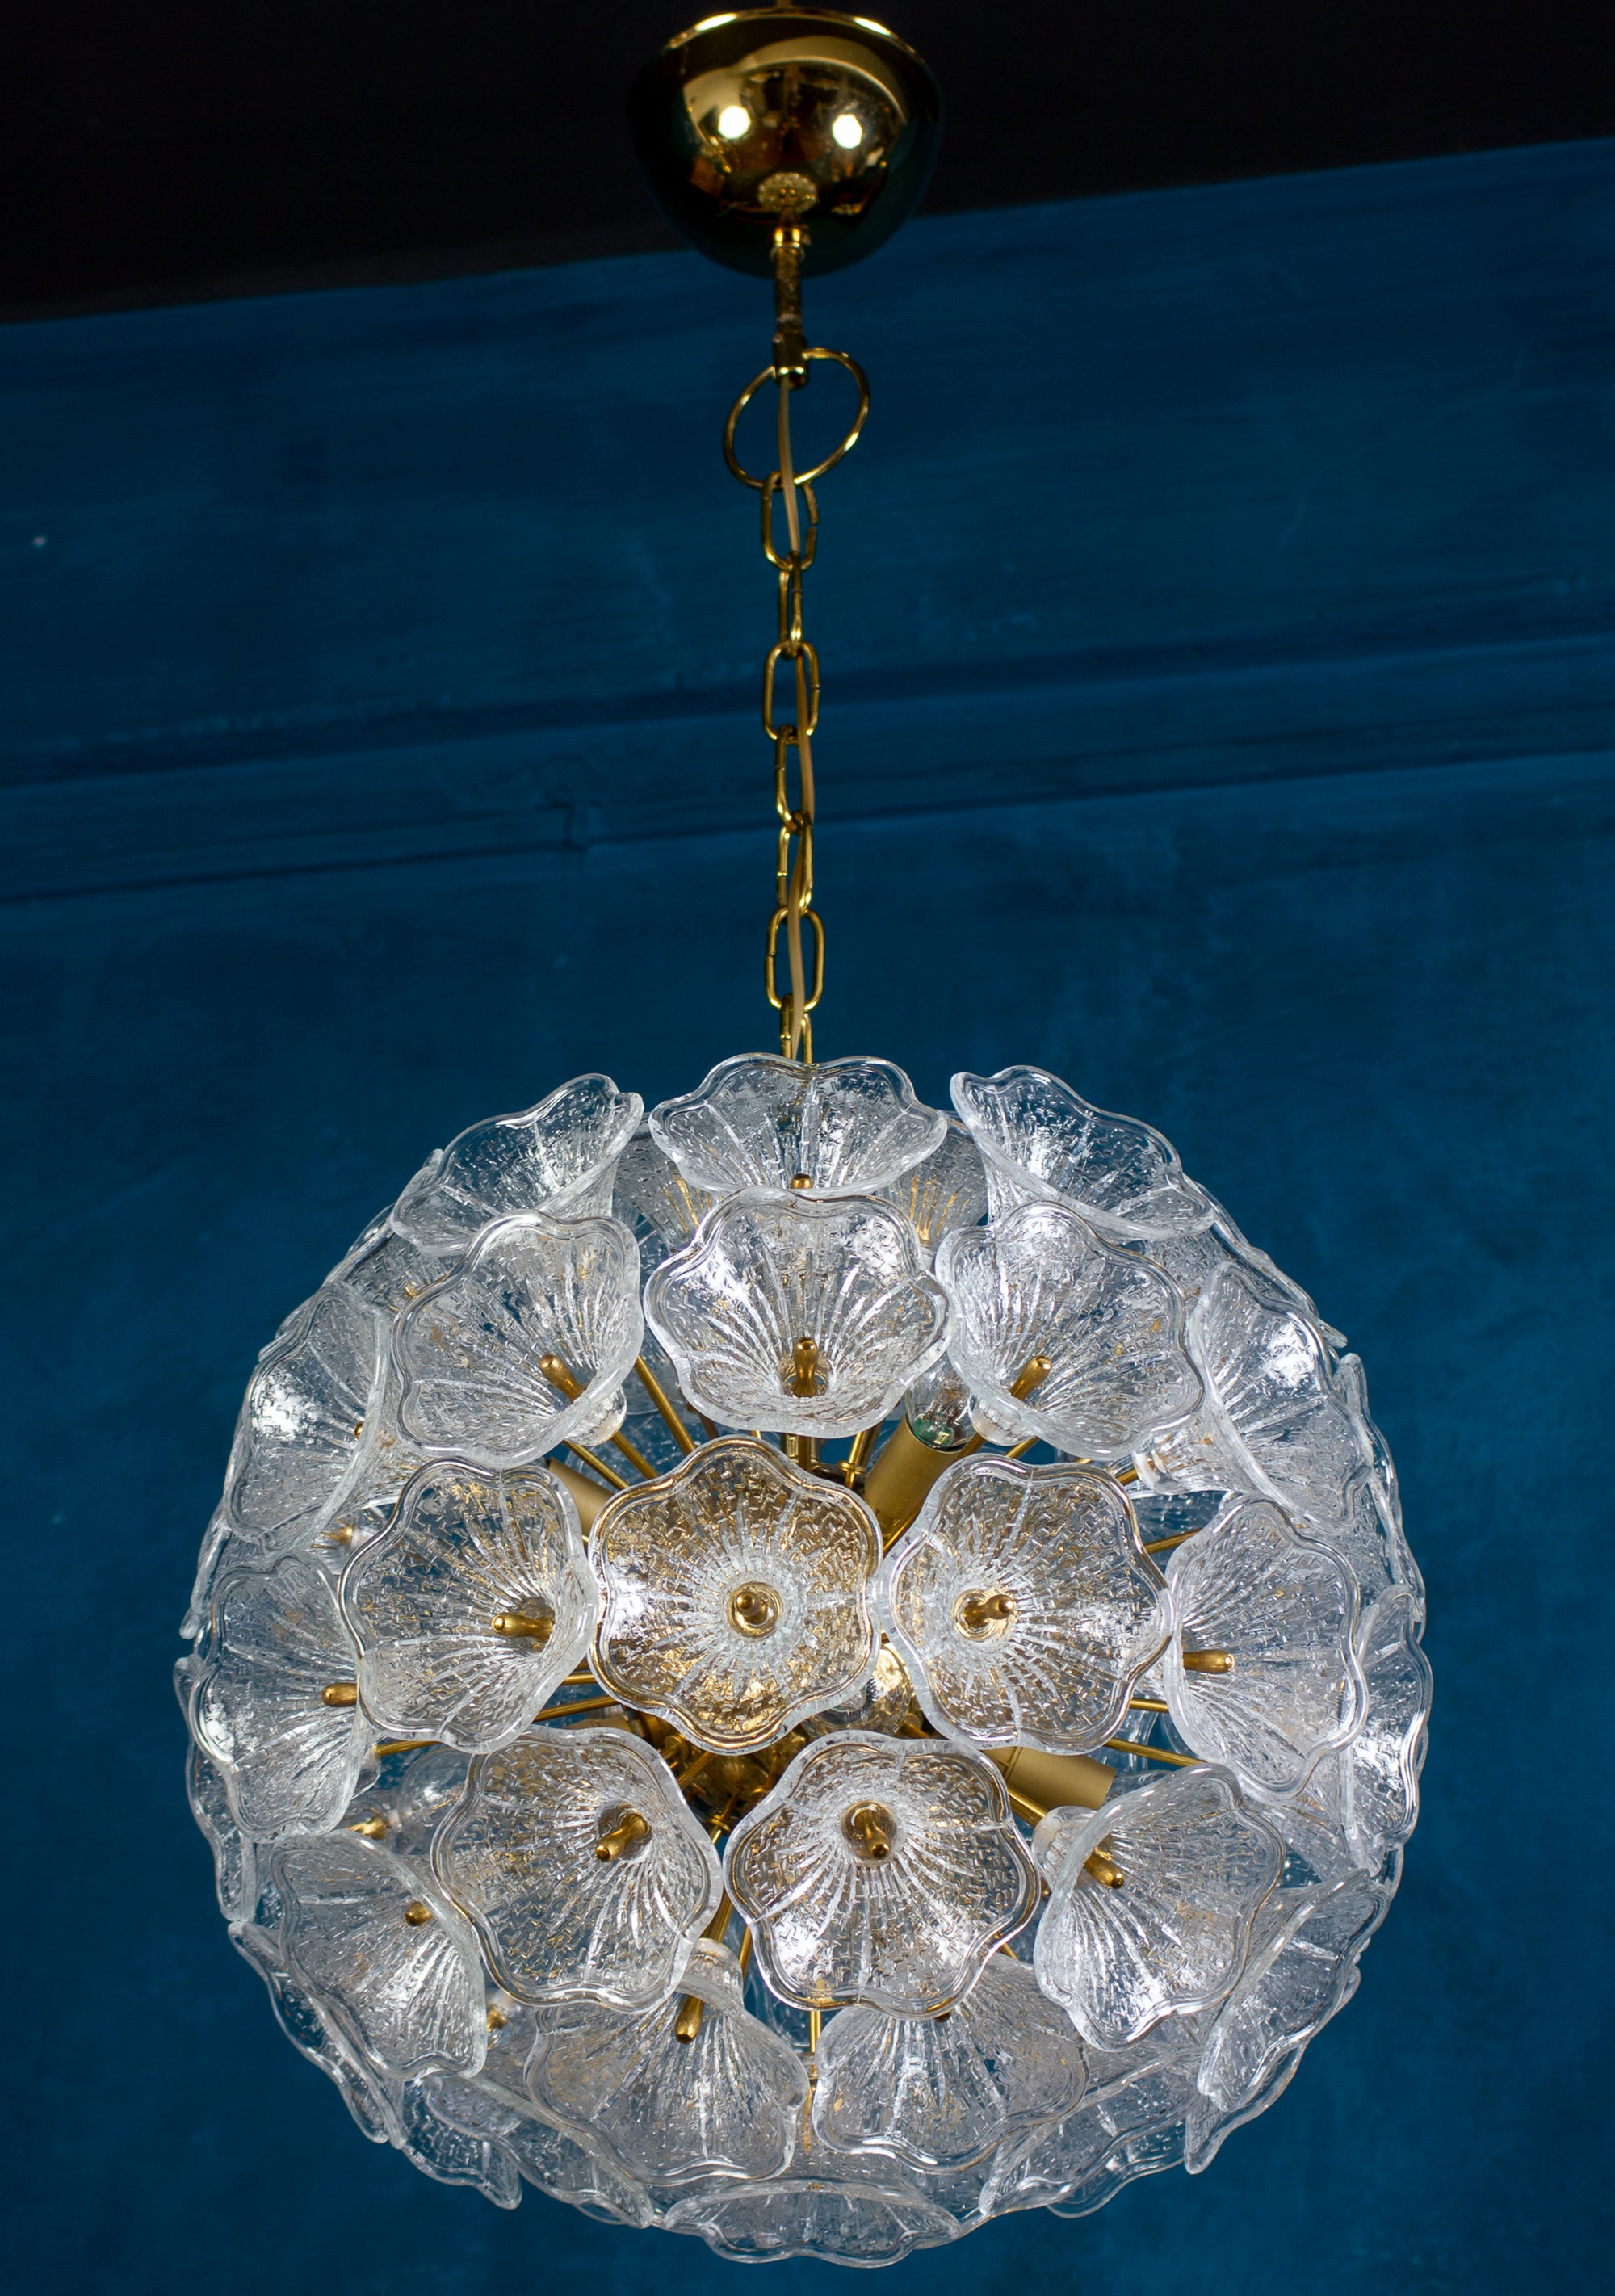 Sputnik Flower Kronleuchter aus Murano-Glas von Paolo Venini für VeArt, Italien. Überzogen mit einer Blume aus geformtem Glas mit Eisstruktur auf einem Sputnik-Rahmen aus Messing. 
Ein schöner, klarer, natürlicher Look wie ein Juwel in Ihrem